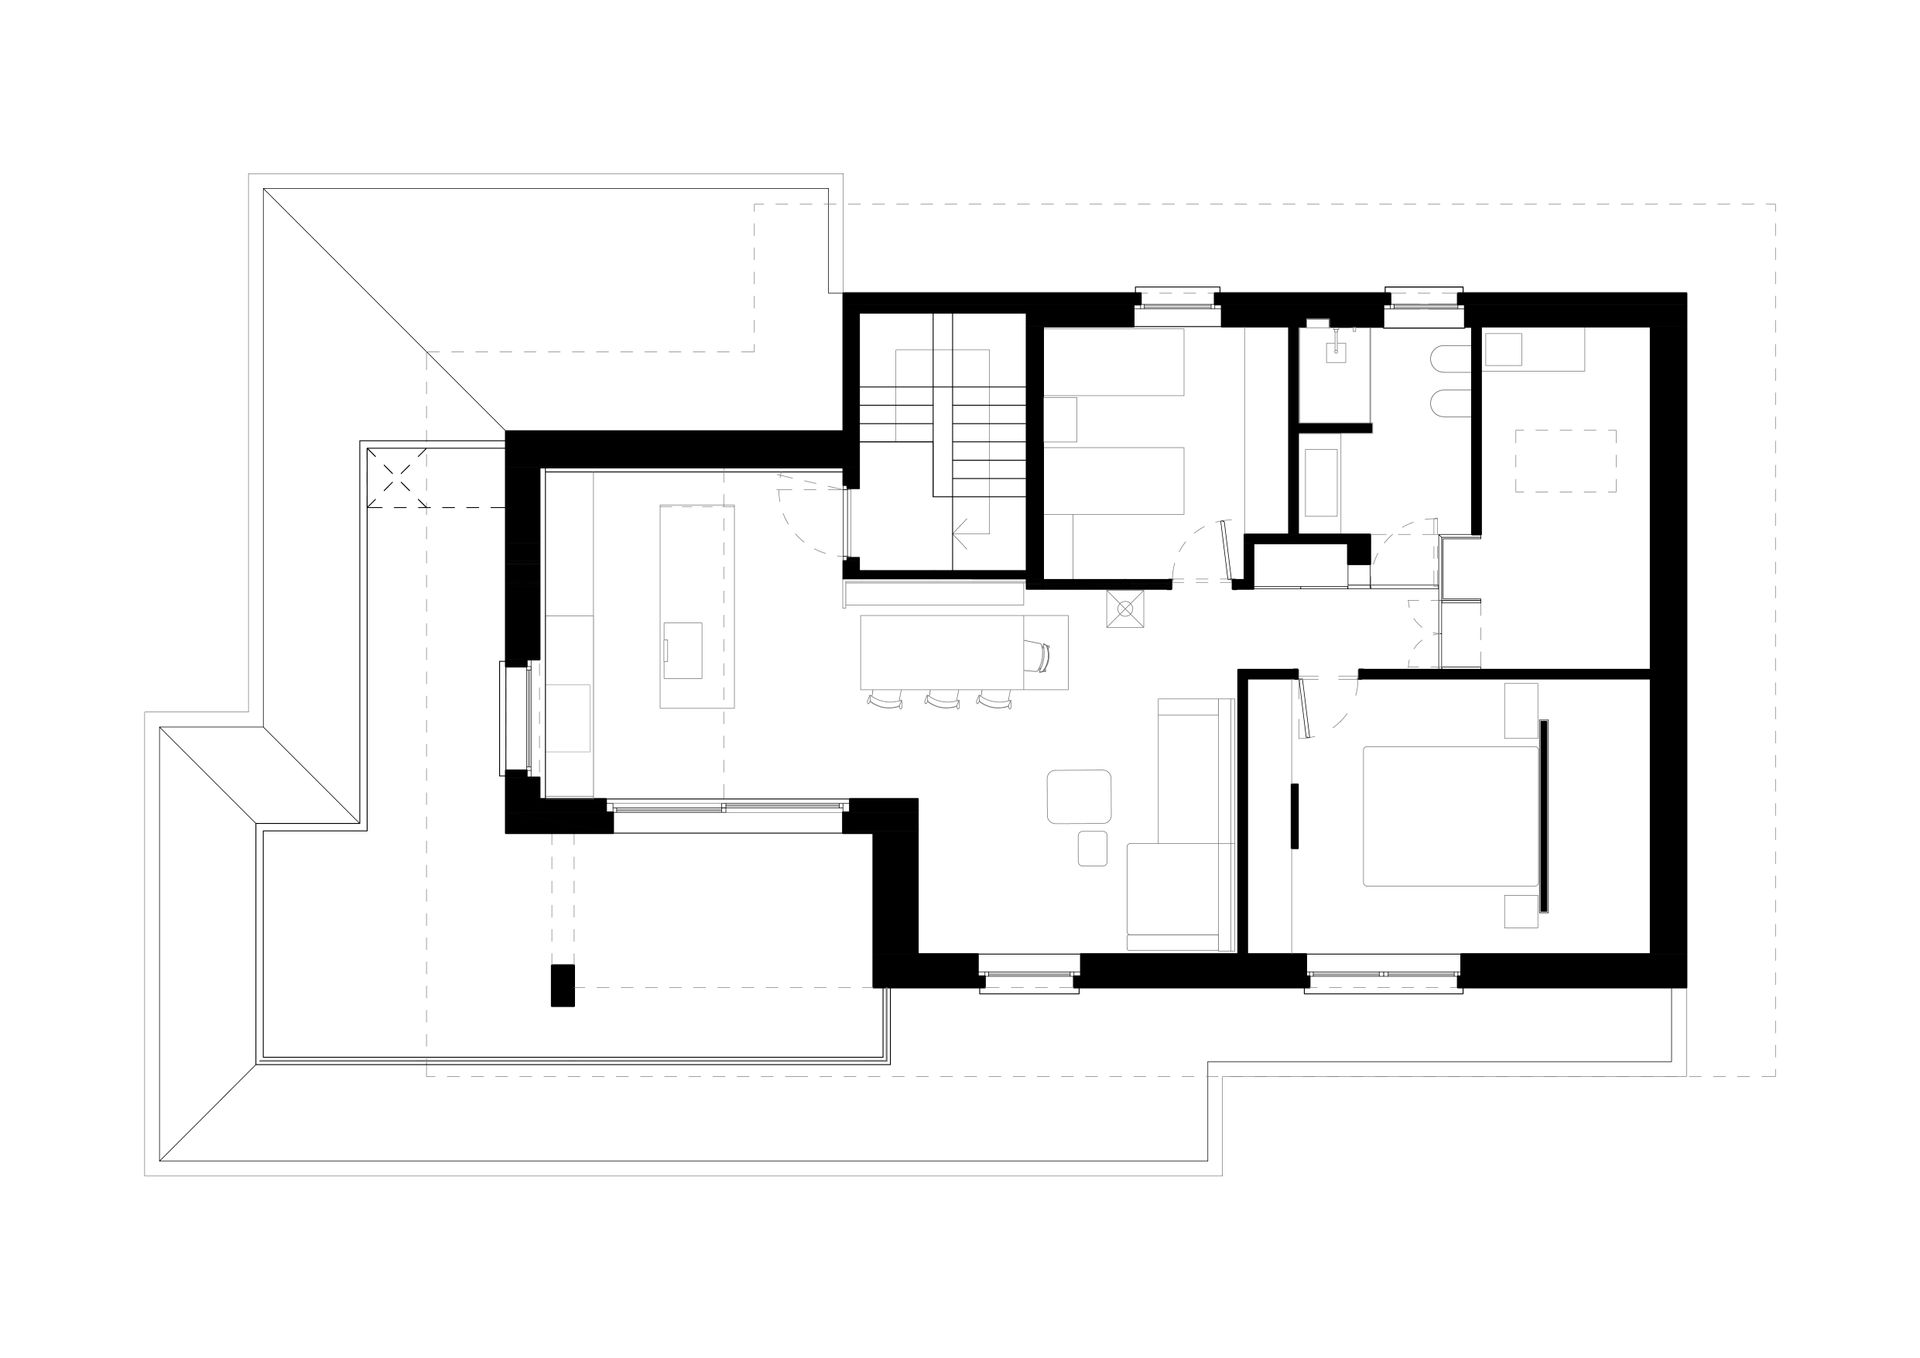 Progetto interior design, ristrutturazione appartamento ultimo piano casa unifamiliare provincia di Bergamo. Officina Magisafi architettura design - pianta